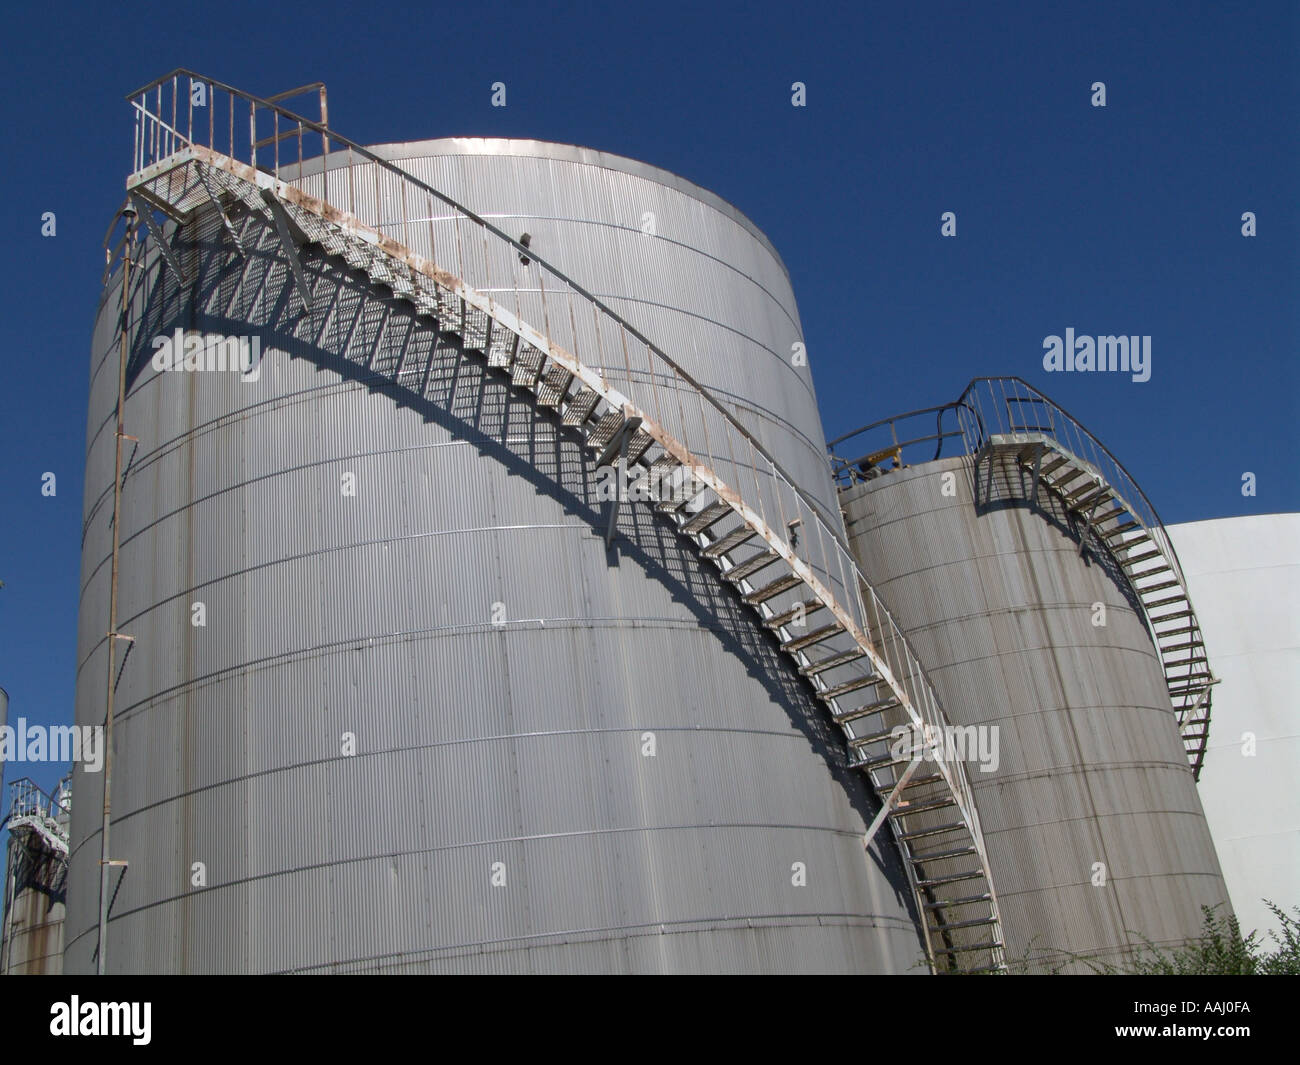 Les réservoirs de stockage de pétrole à partir d'un angle de caméra faible Banque D'Images